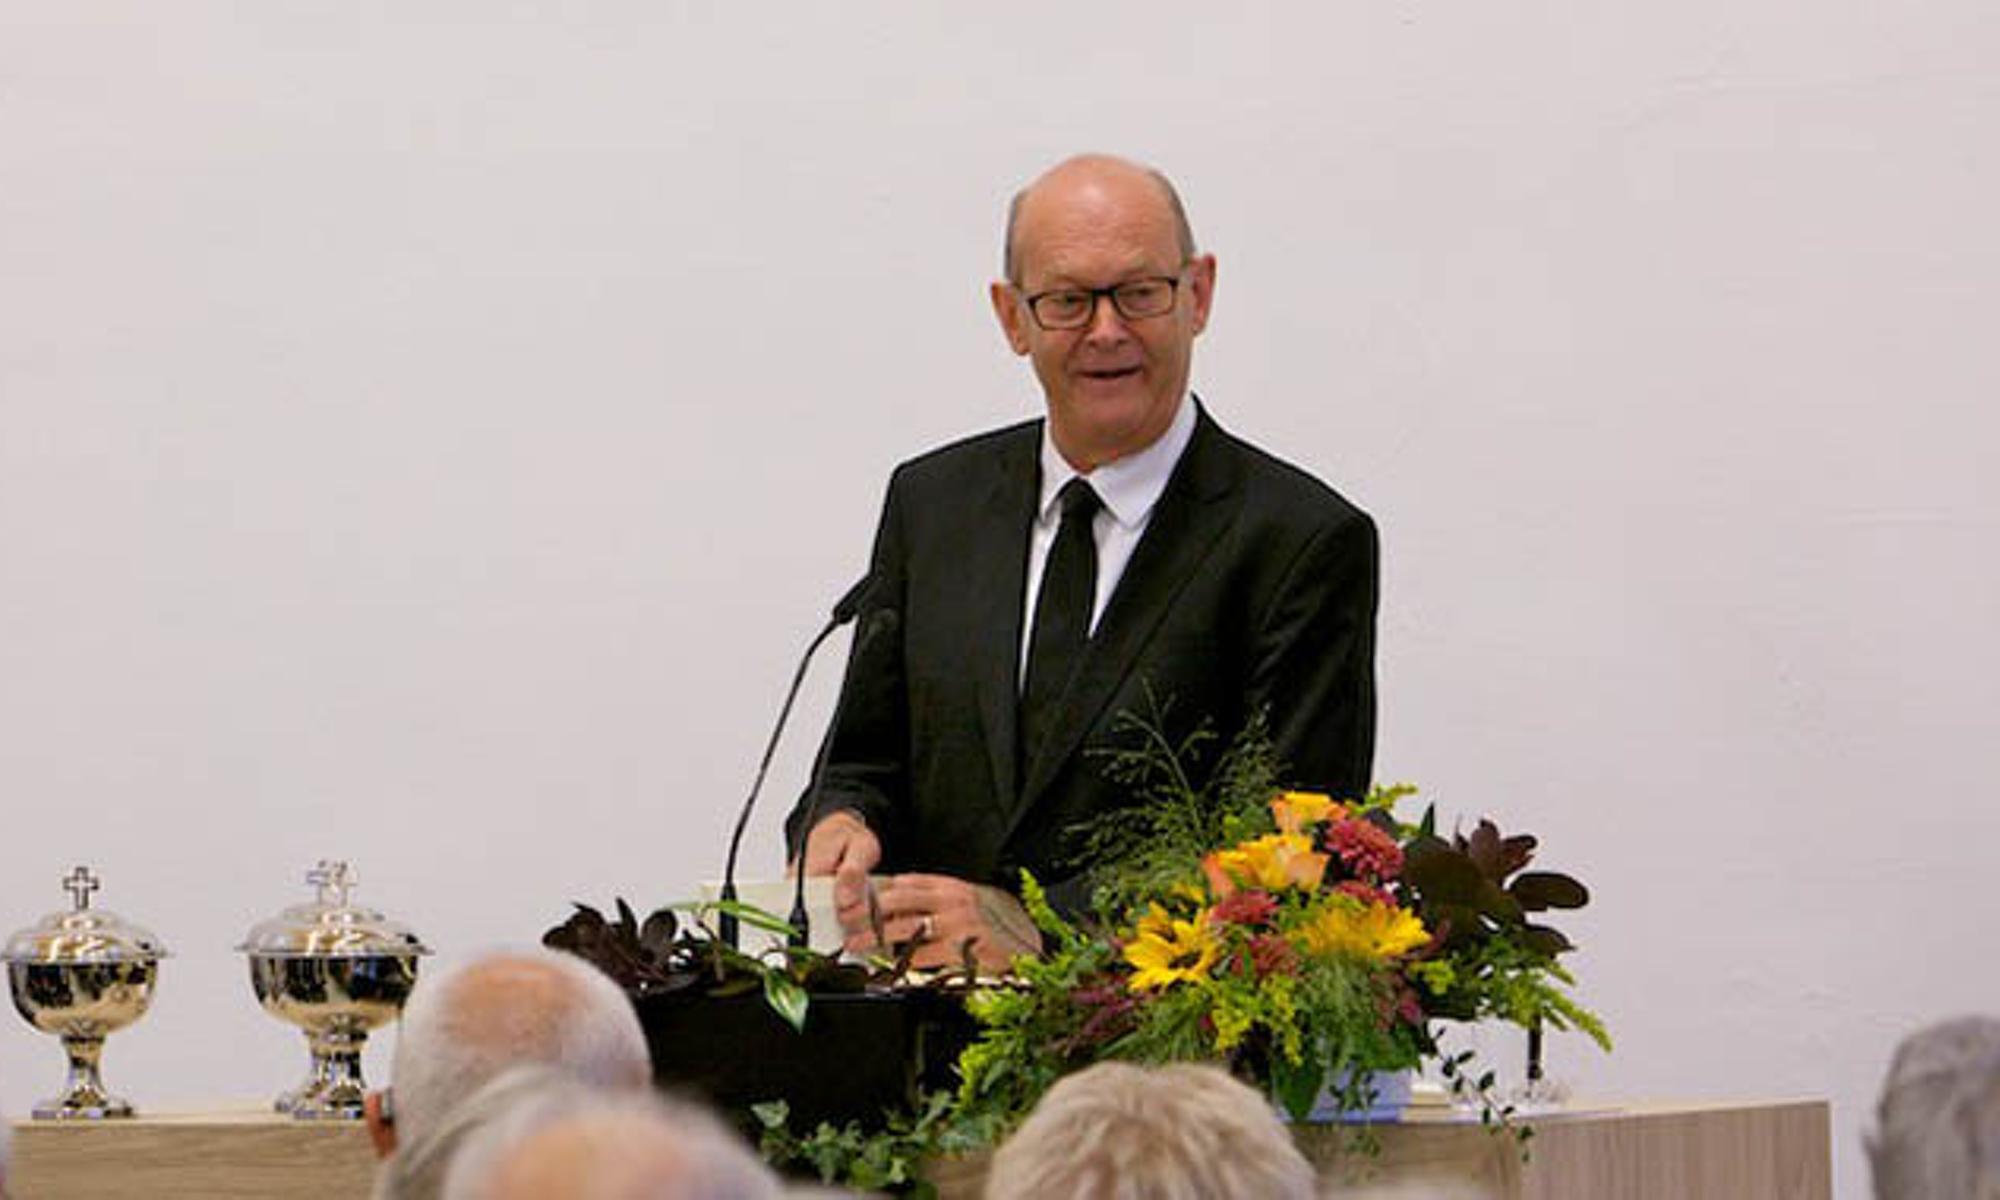 Bischof Manfred Schönenborn